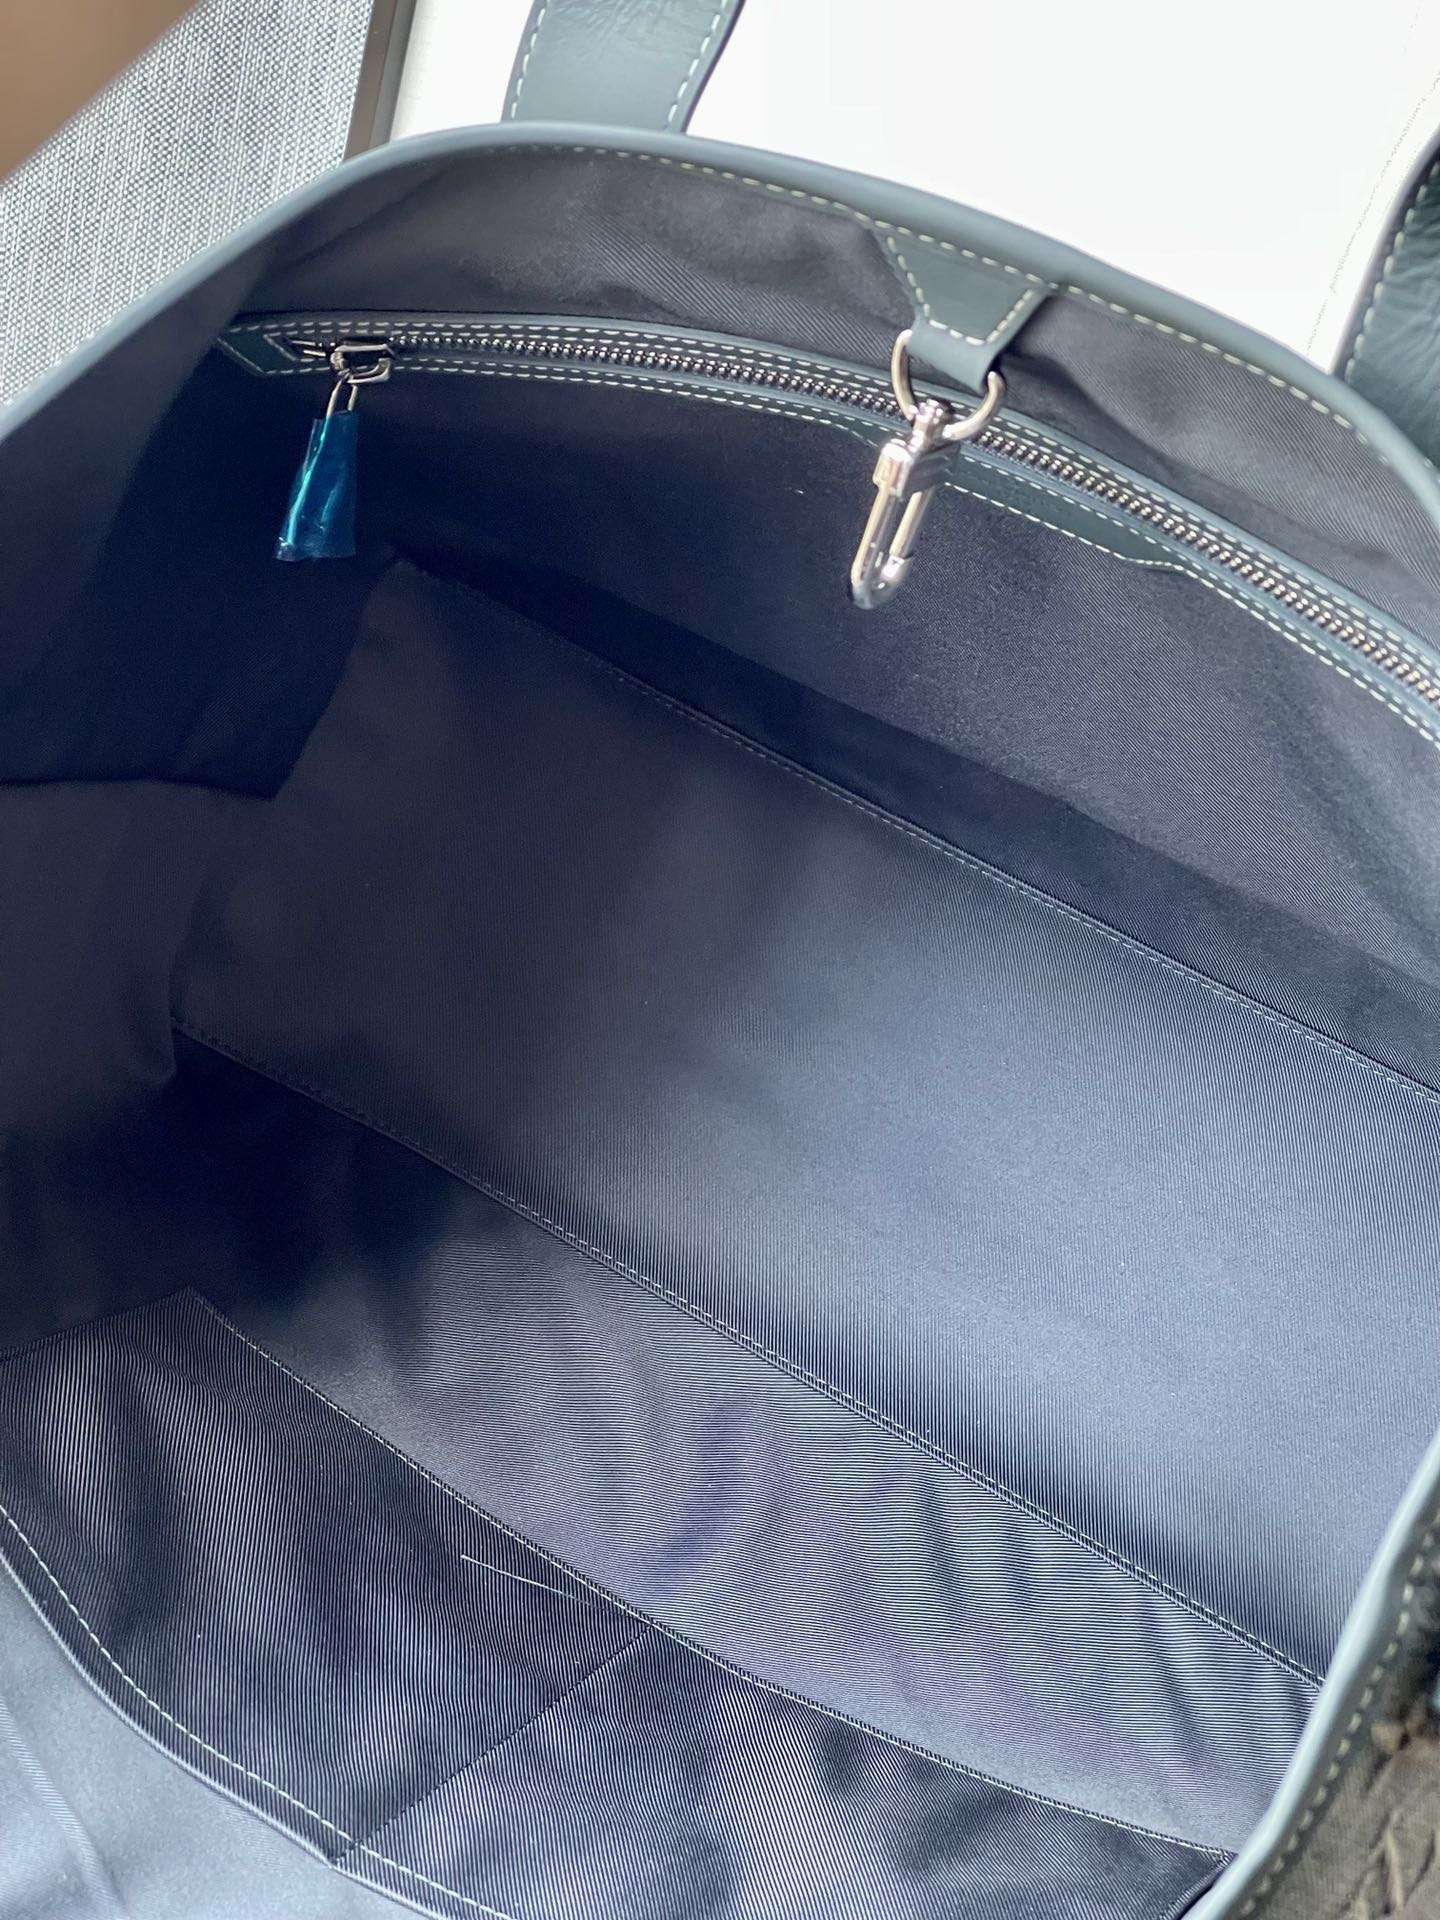 Louis Vuitton Blue Monogram Washed Denim Weekend Tote Bag